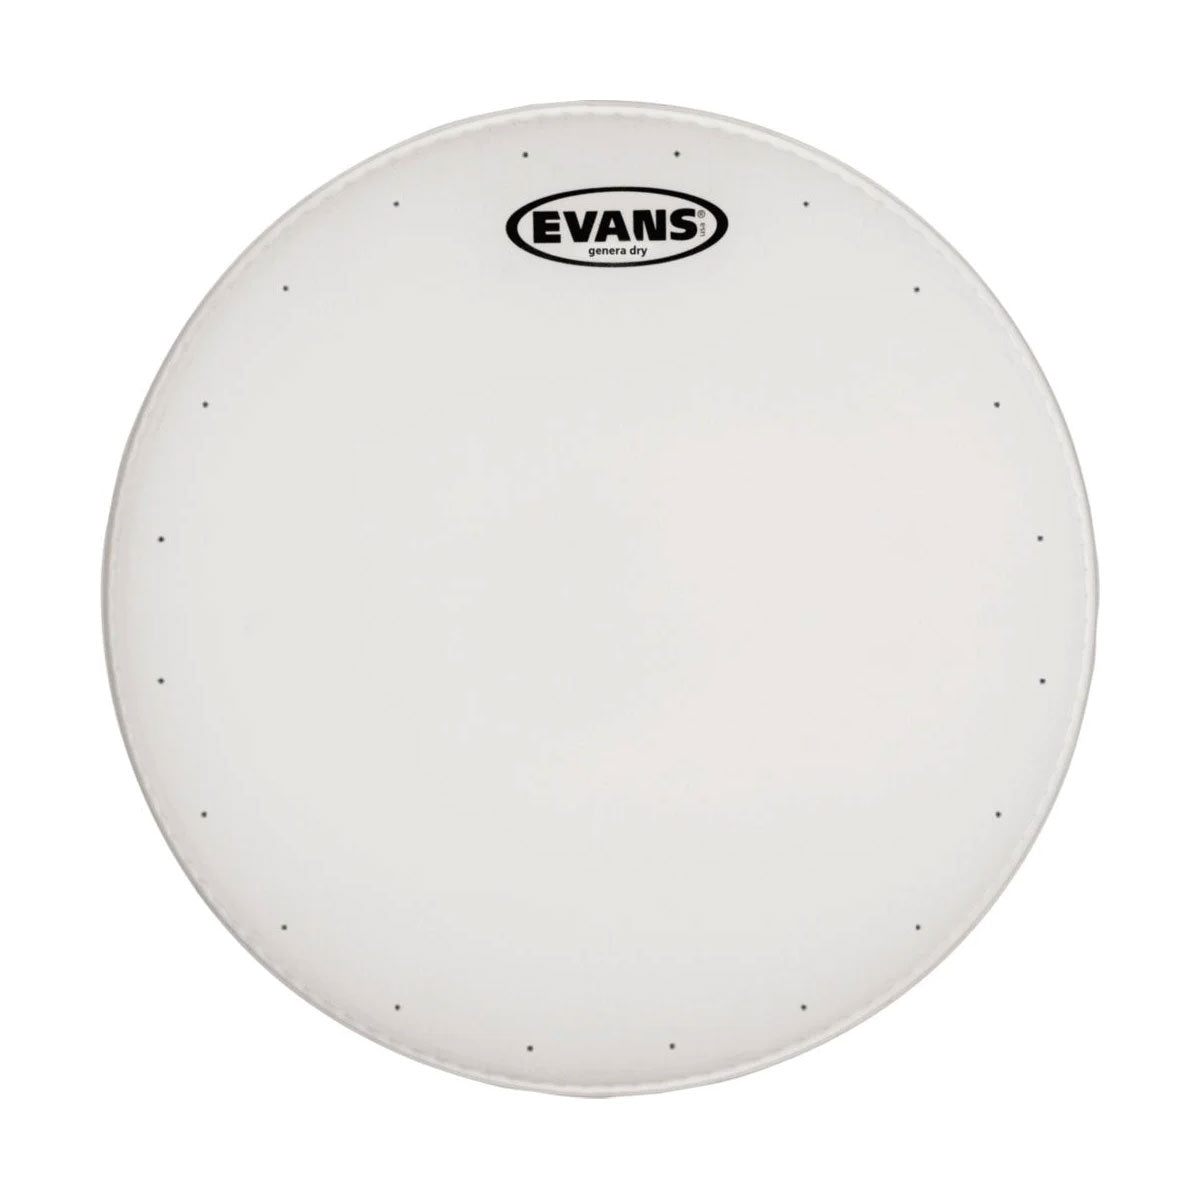 Evans B13DRY Genera Dry Coated Drumhead